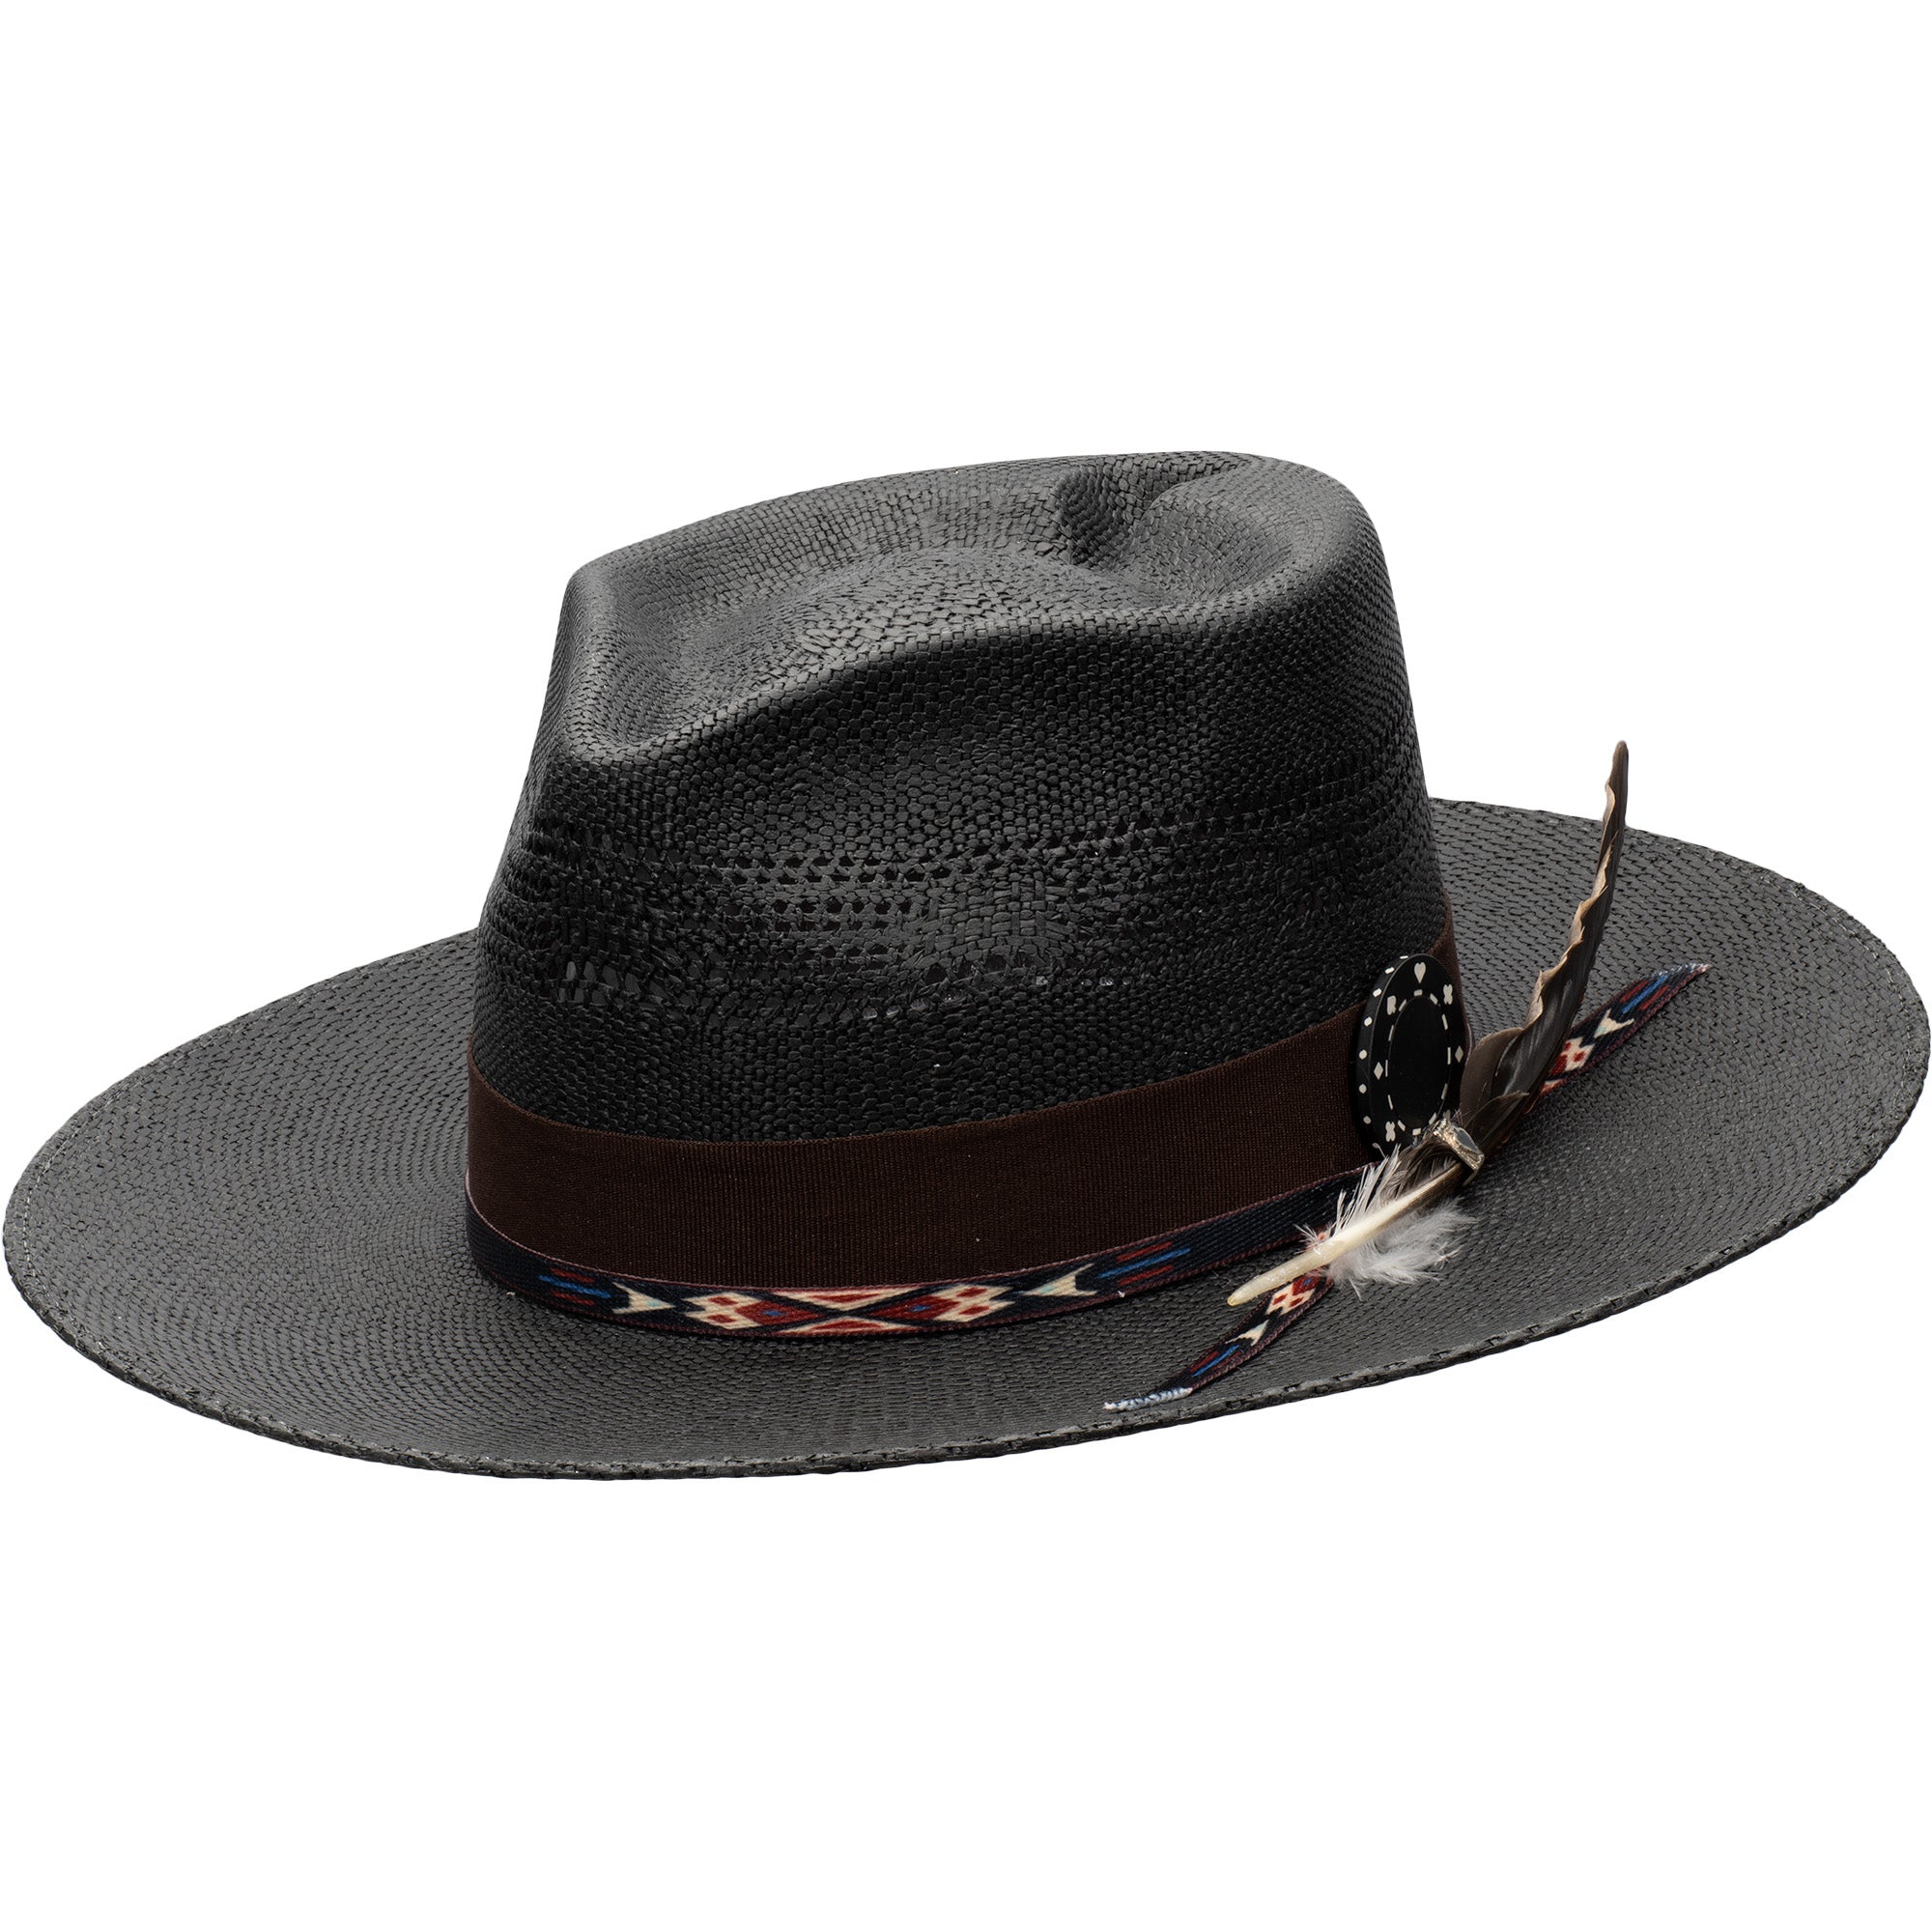 Spade Bangora Straw Black Fedora Hat - Biltmore Vintage Hats